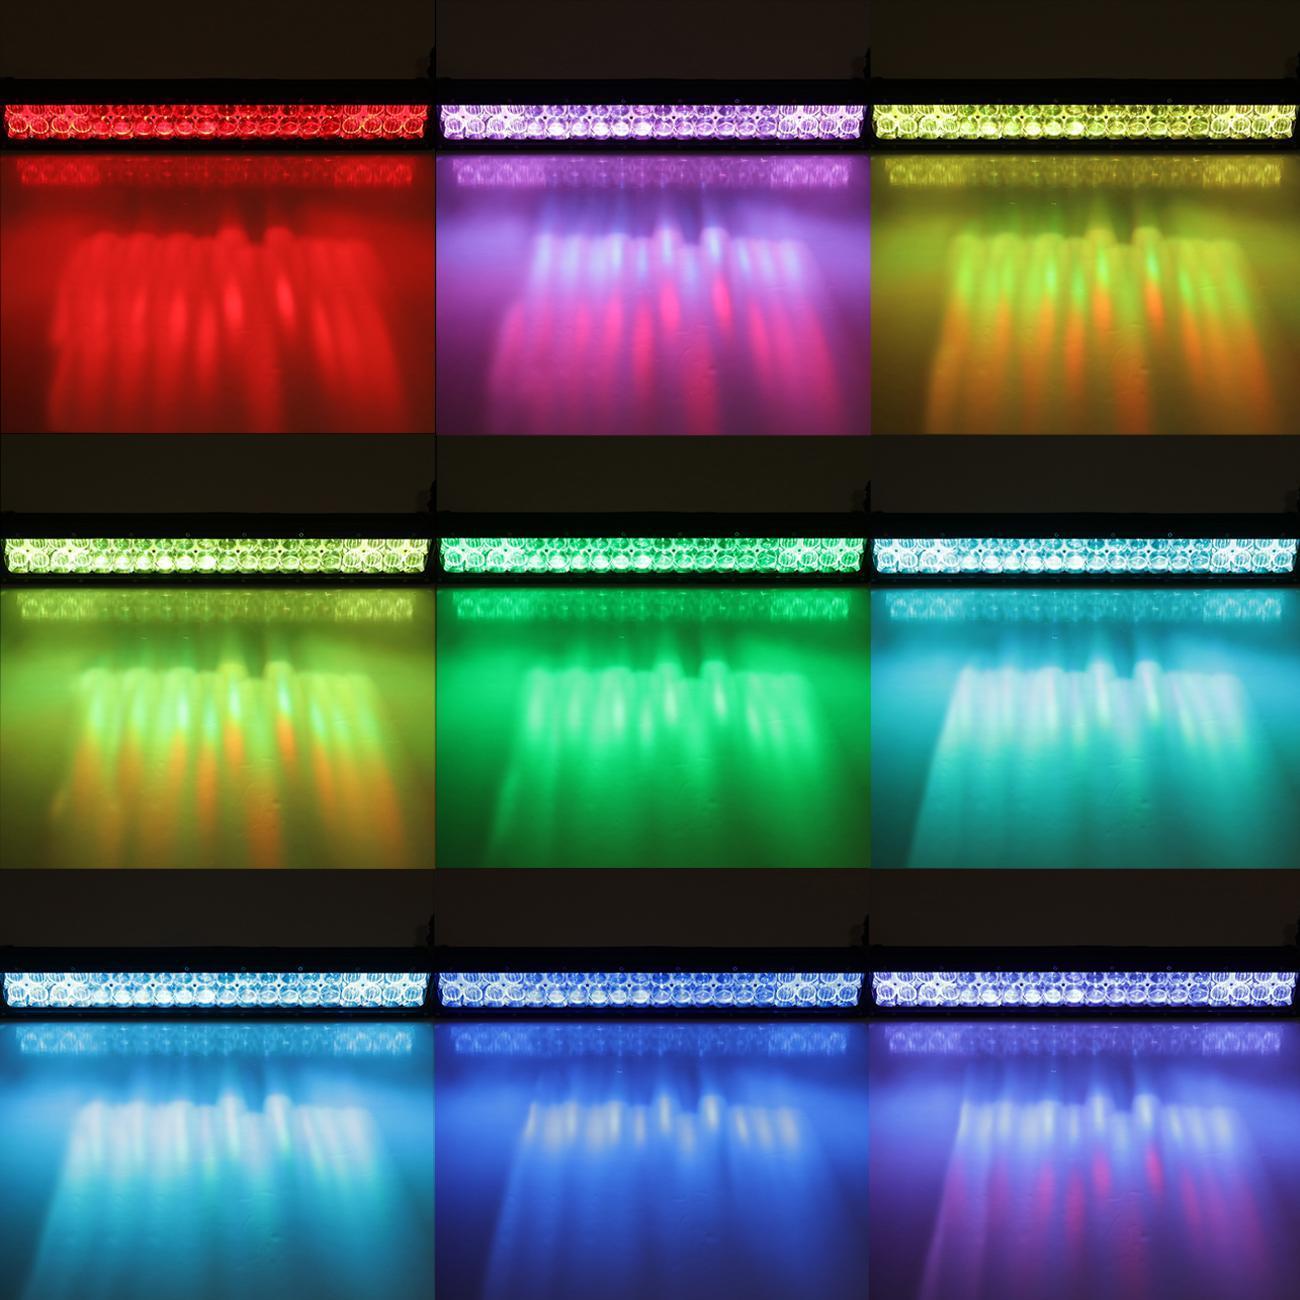 V-Series RGB Color Changing Off Road LED Light Bar